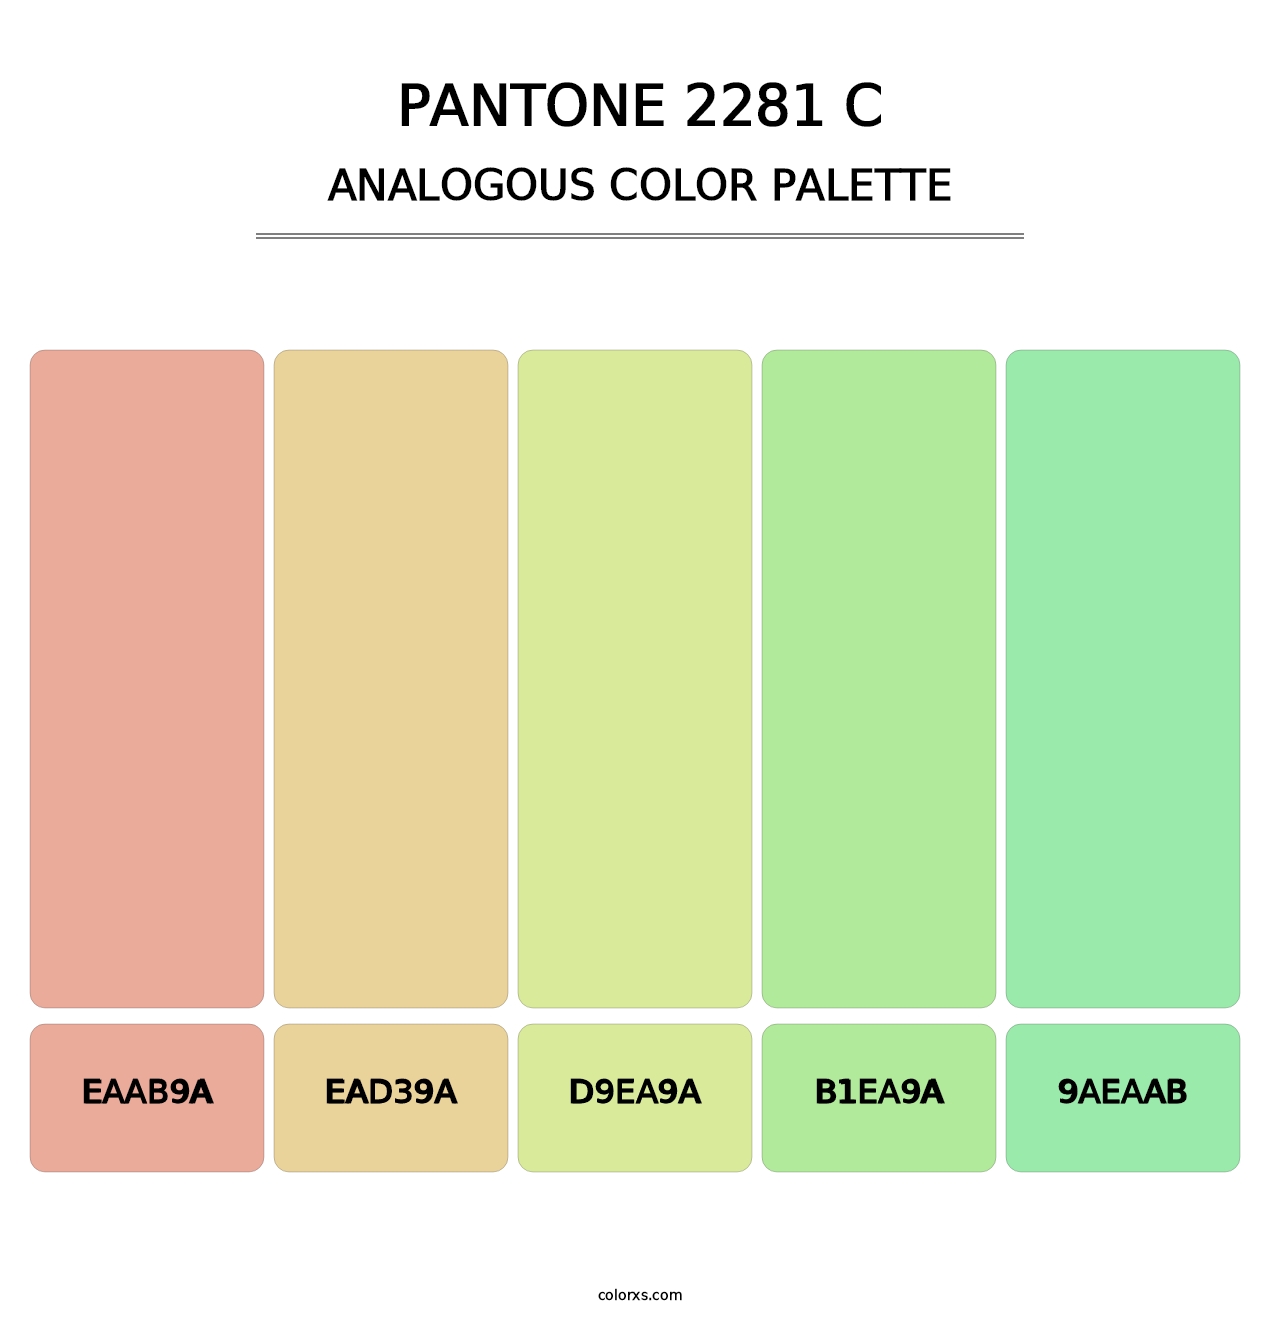 PANTONE 2281 C - Analogous Color Palette